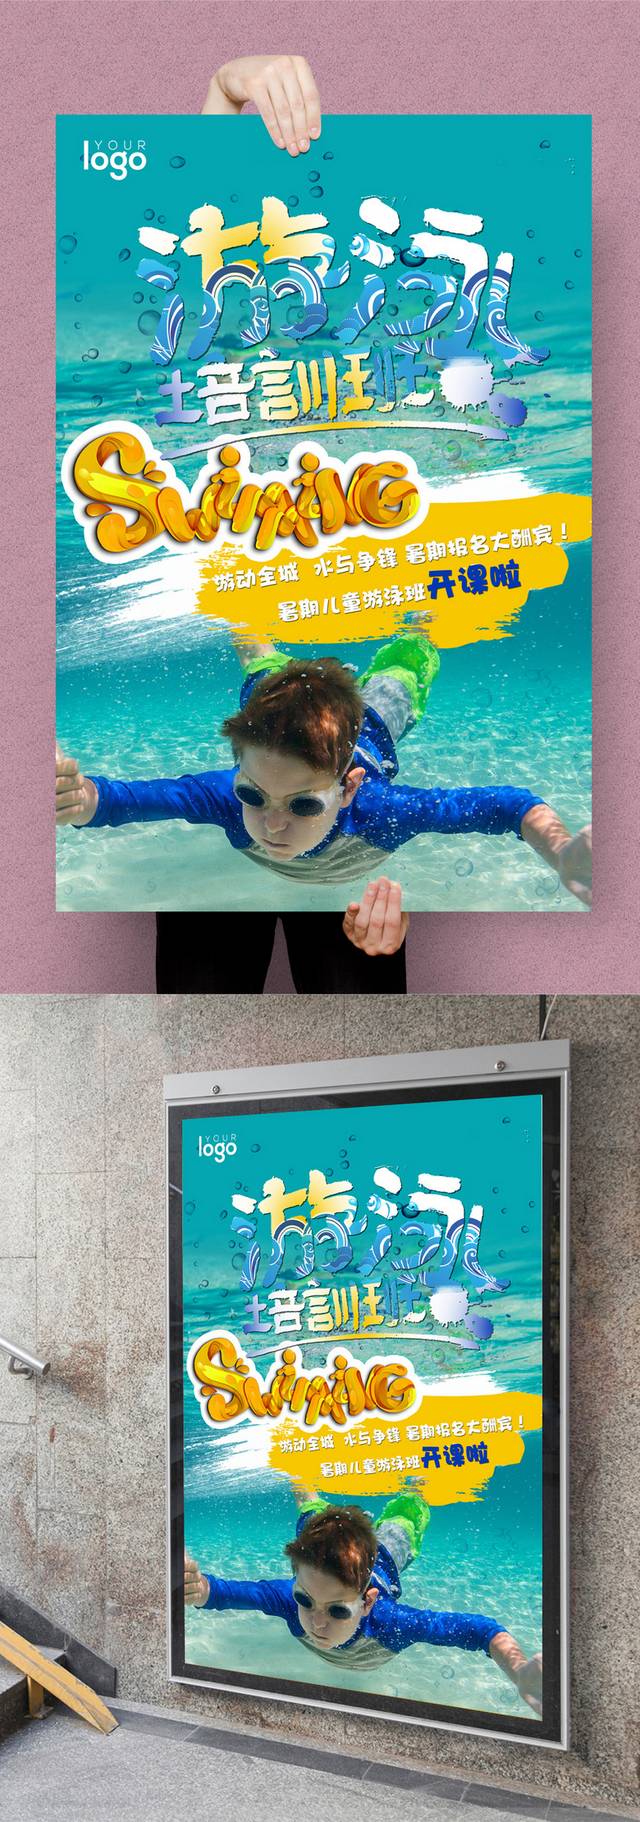 游泳训练宣传海报设计